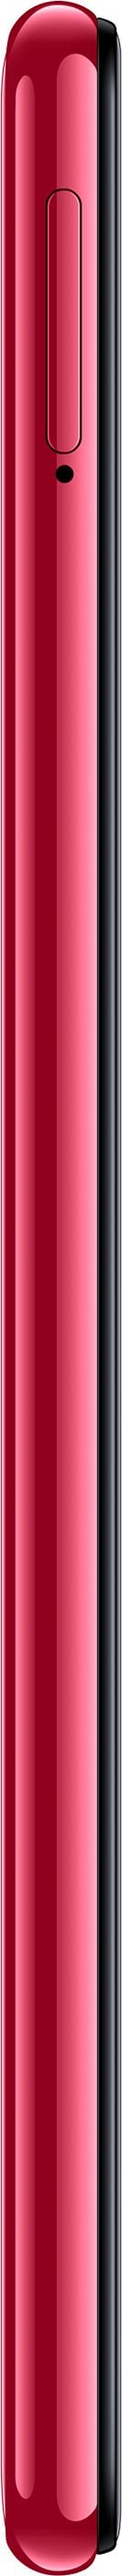 Samsung Galaxy A7 (2018) 64GB Pink